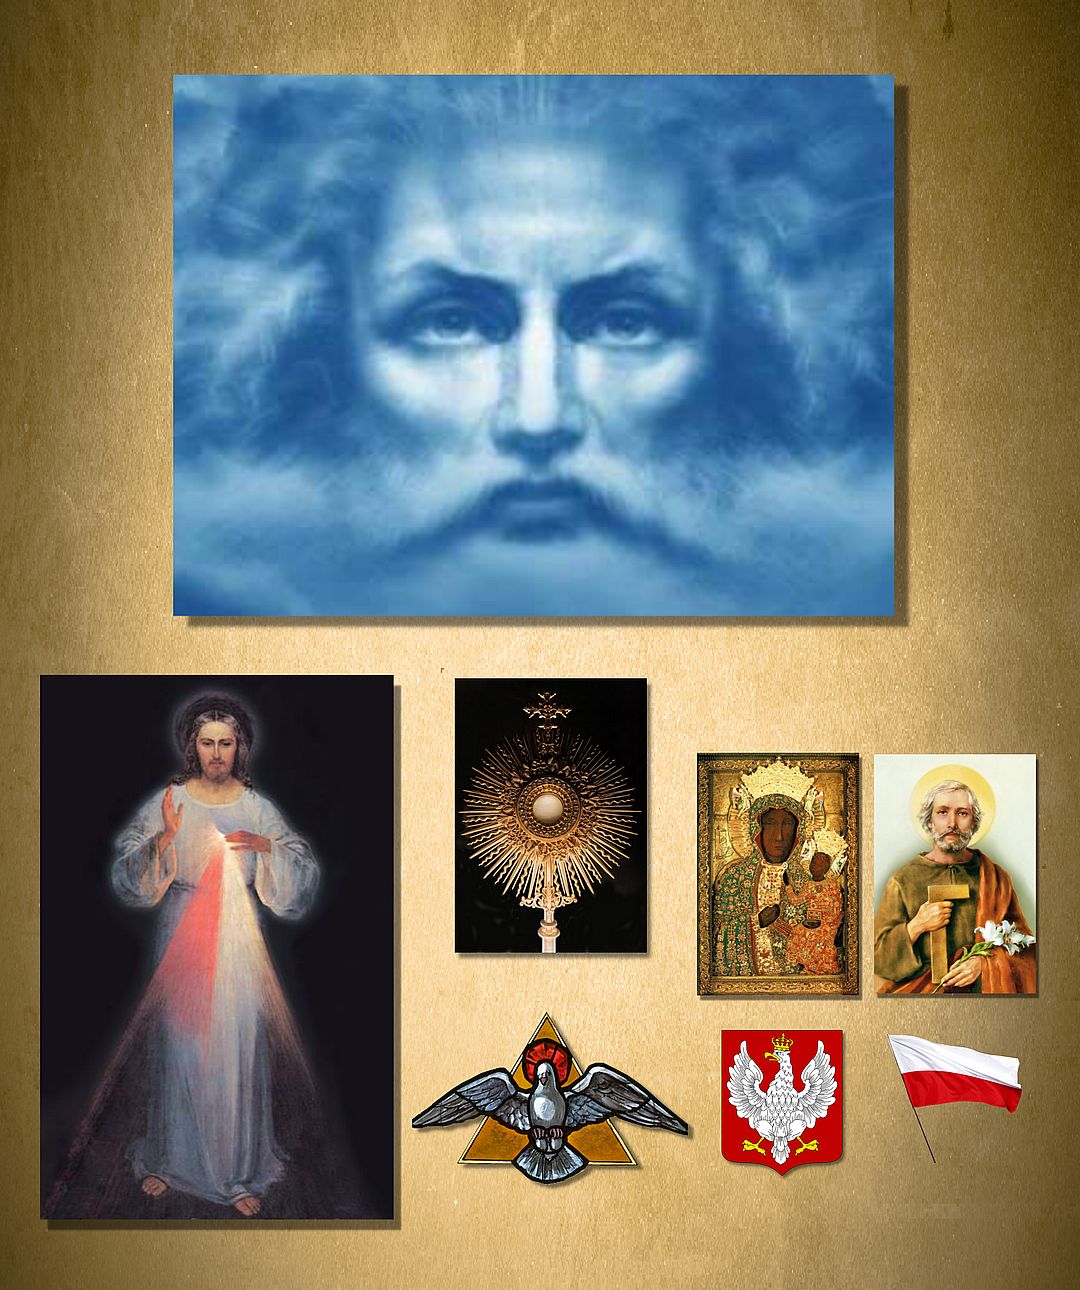 Bóg Ojciec Sędzia Sprawiedliwy, Pan Jezus Miłosierny, Pan Jezus w Hostii Przenajświętszej Ukryty, Matka Boża Królowa Polski